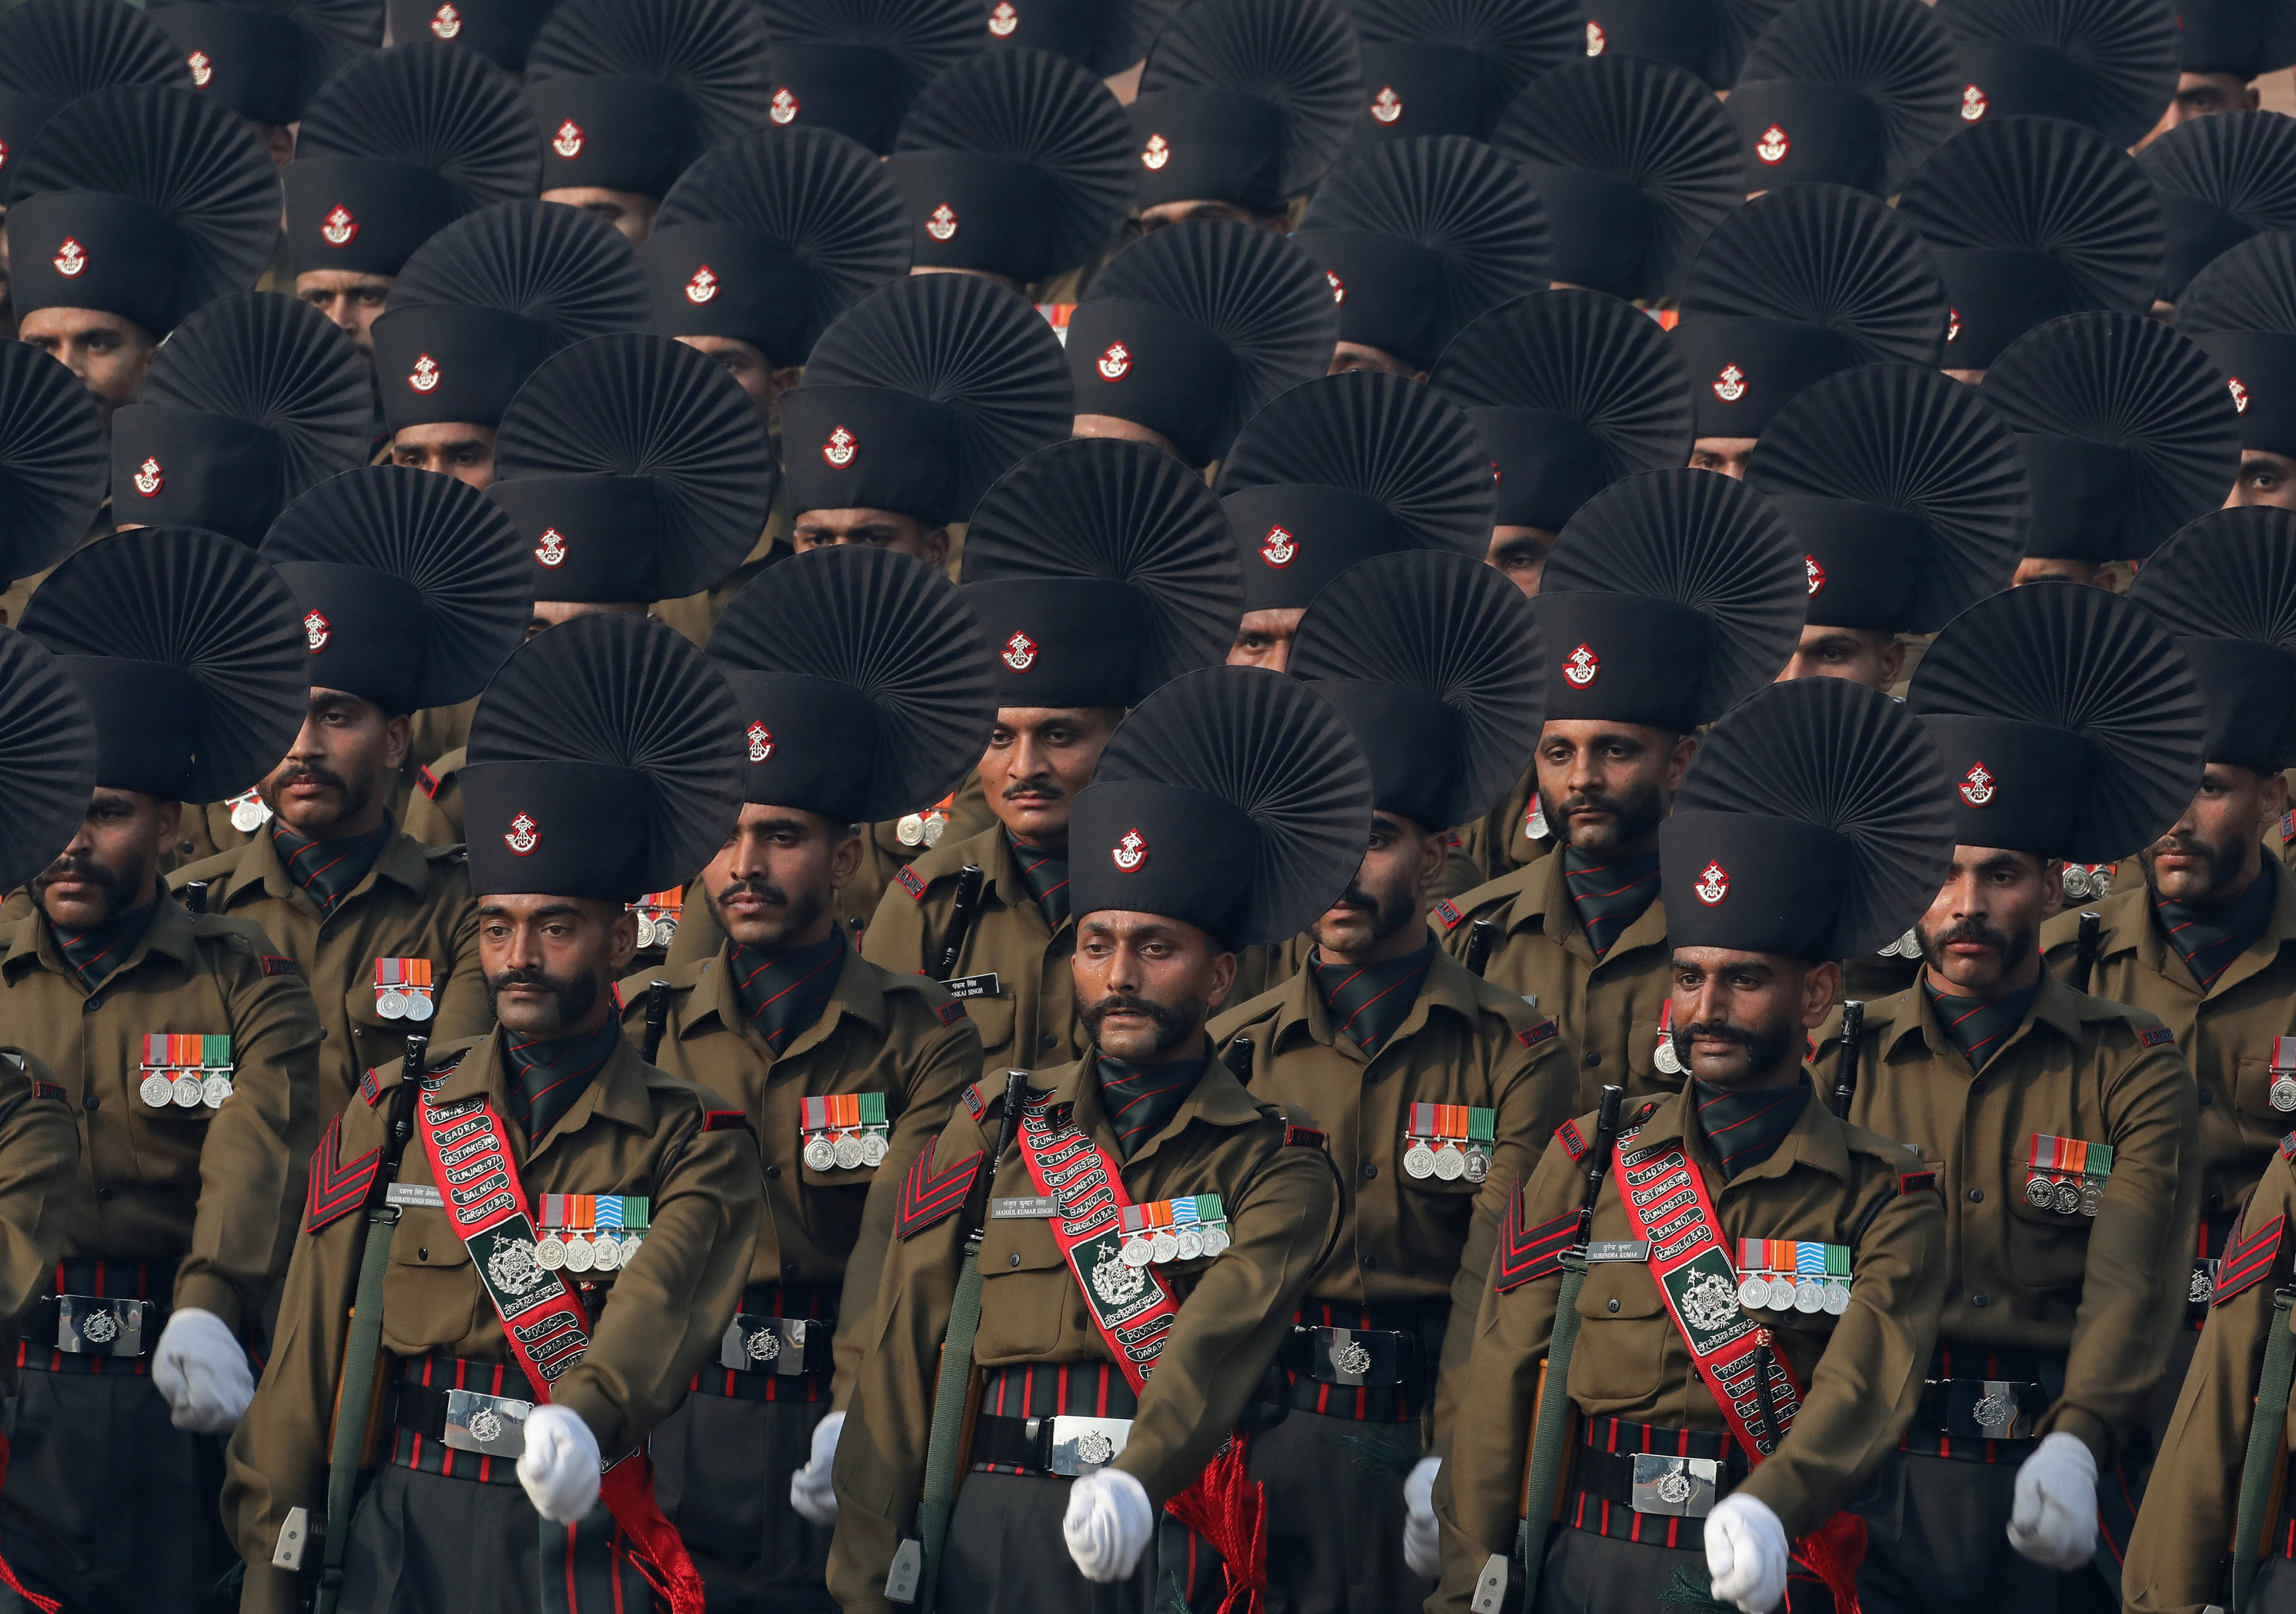 войска в индии